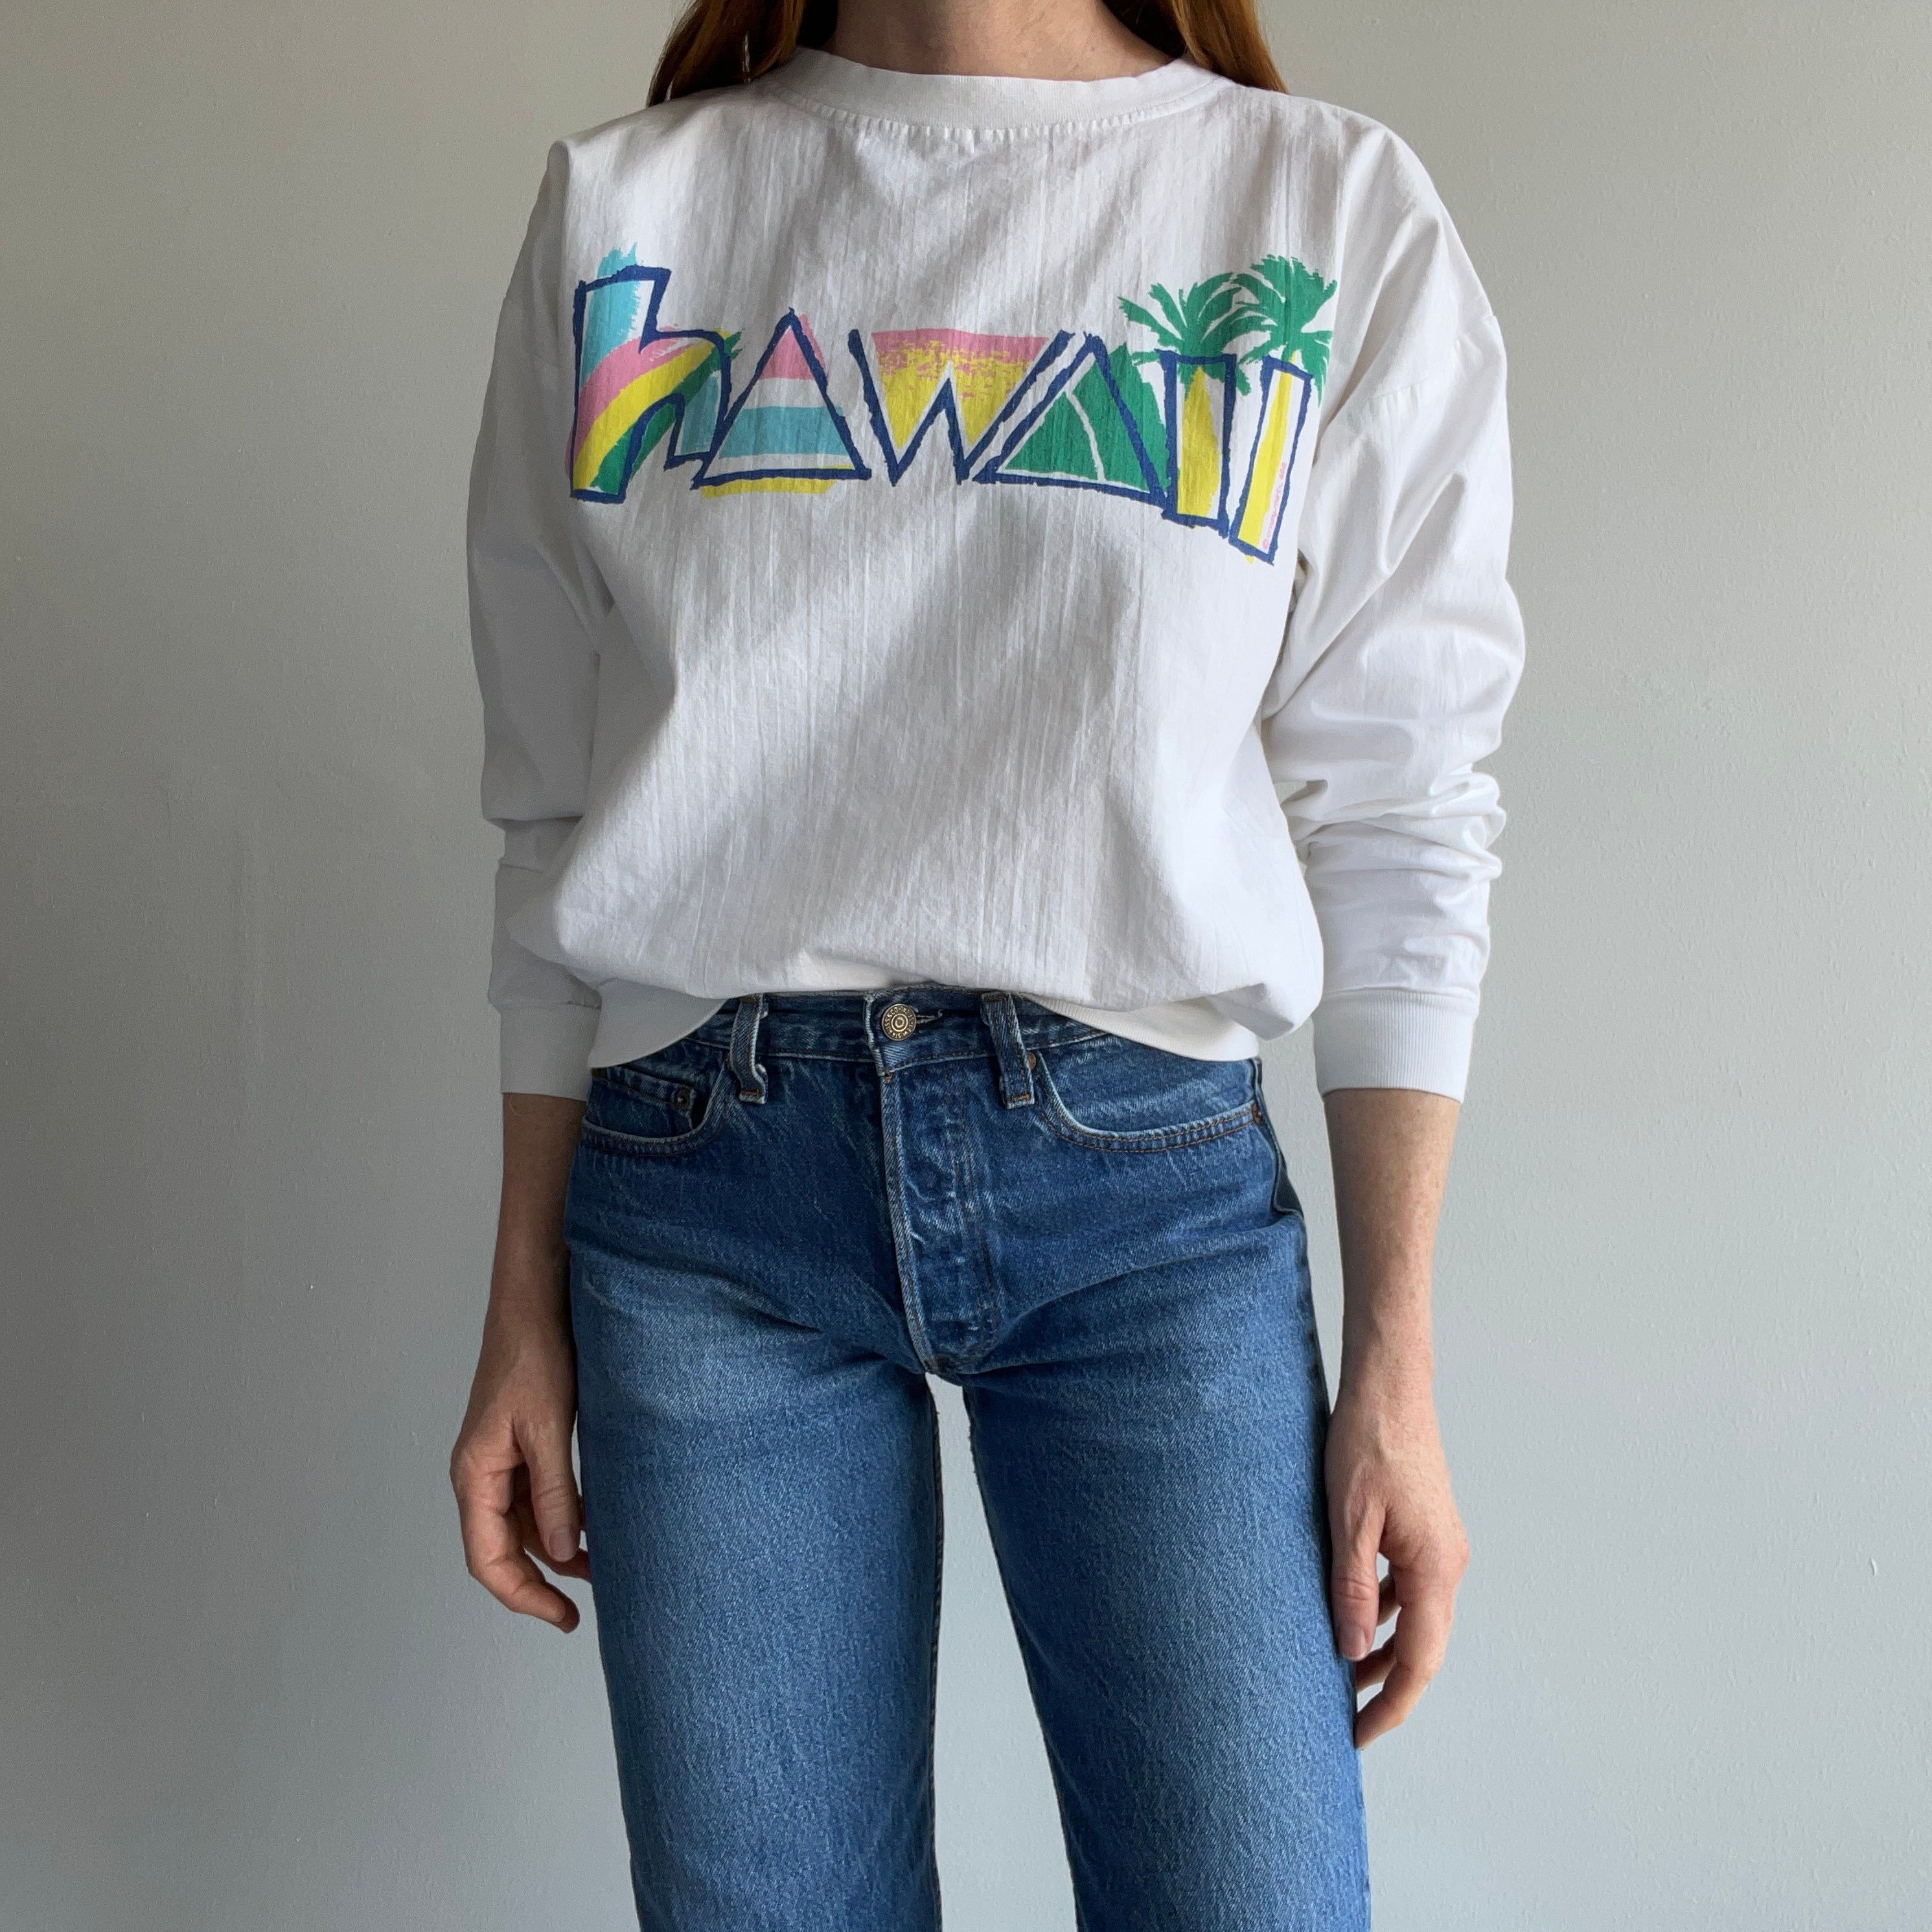 1980s Crazy Shirts Brand Hawaii Lightweight Cotton (No Fleece) Sweatshirt Cut Shirt